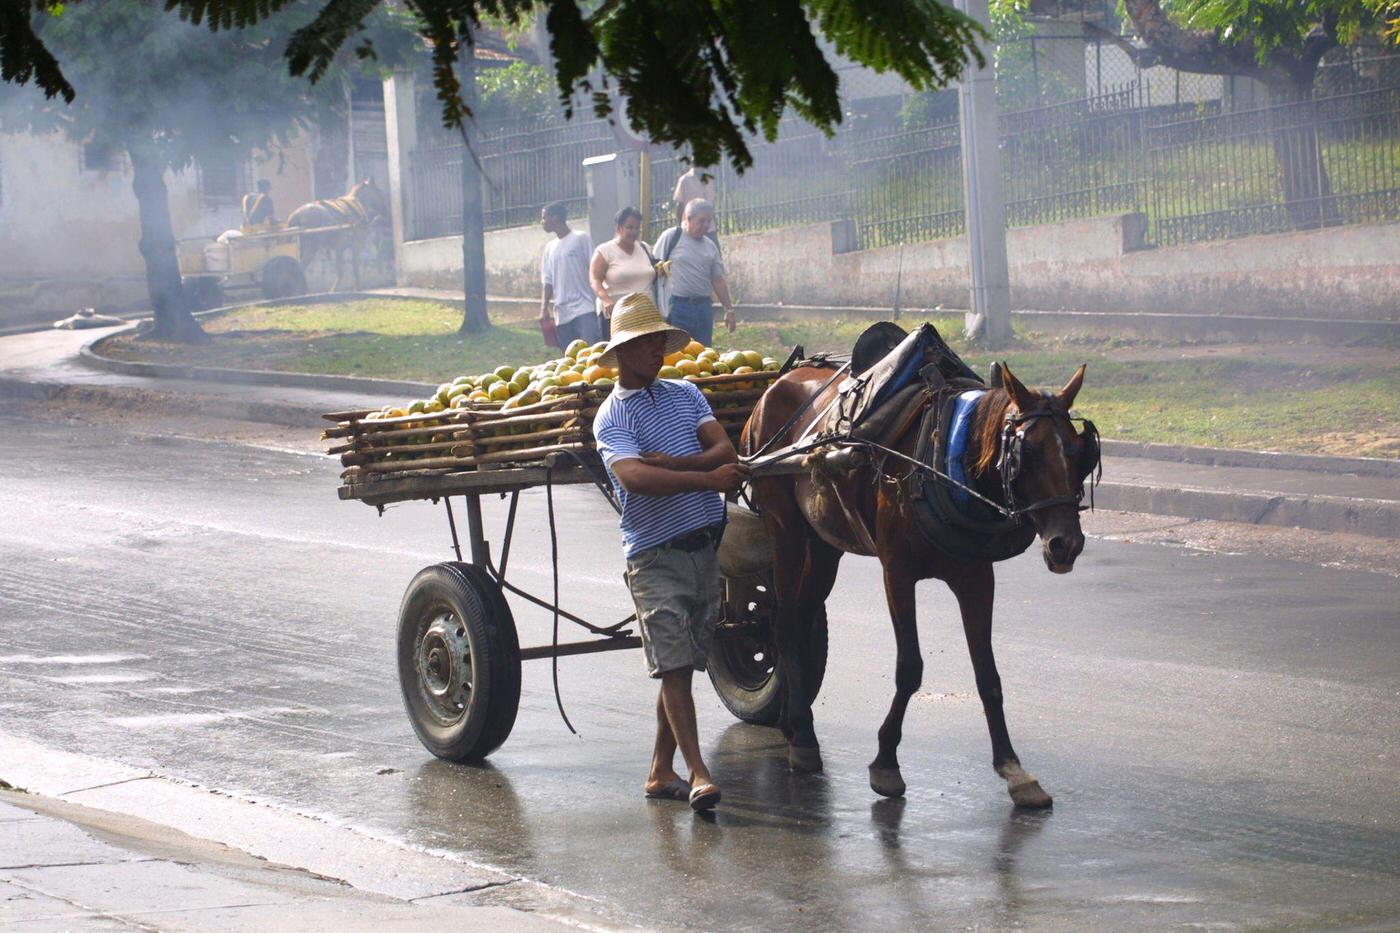 Cuban peasant carrying mangoes on a horse-drawn cart, Cuba, 1990.